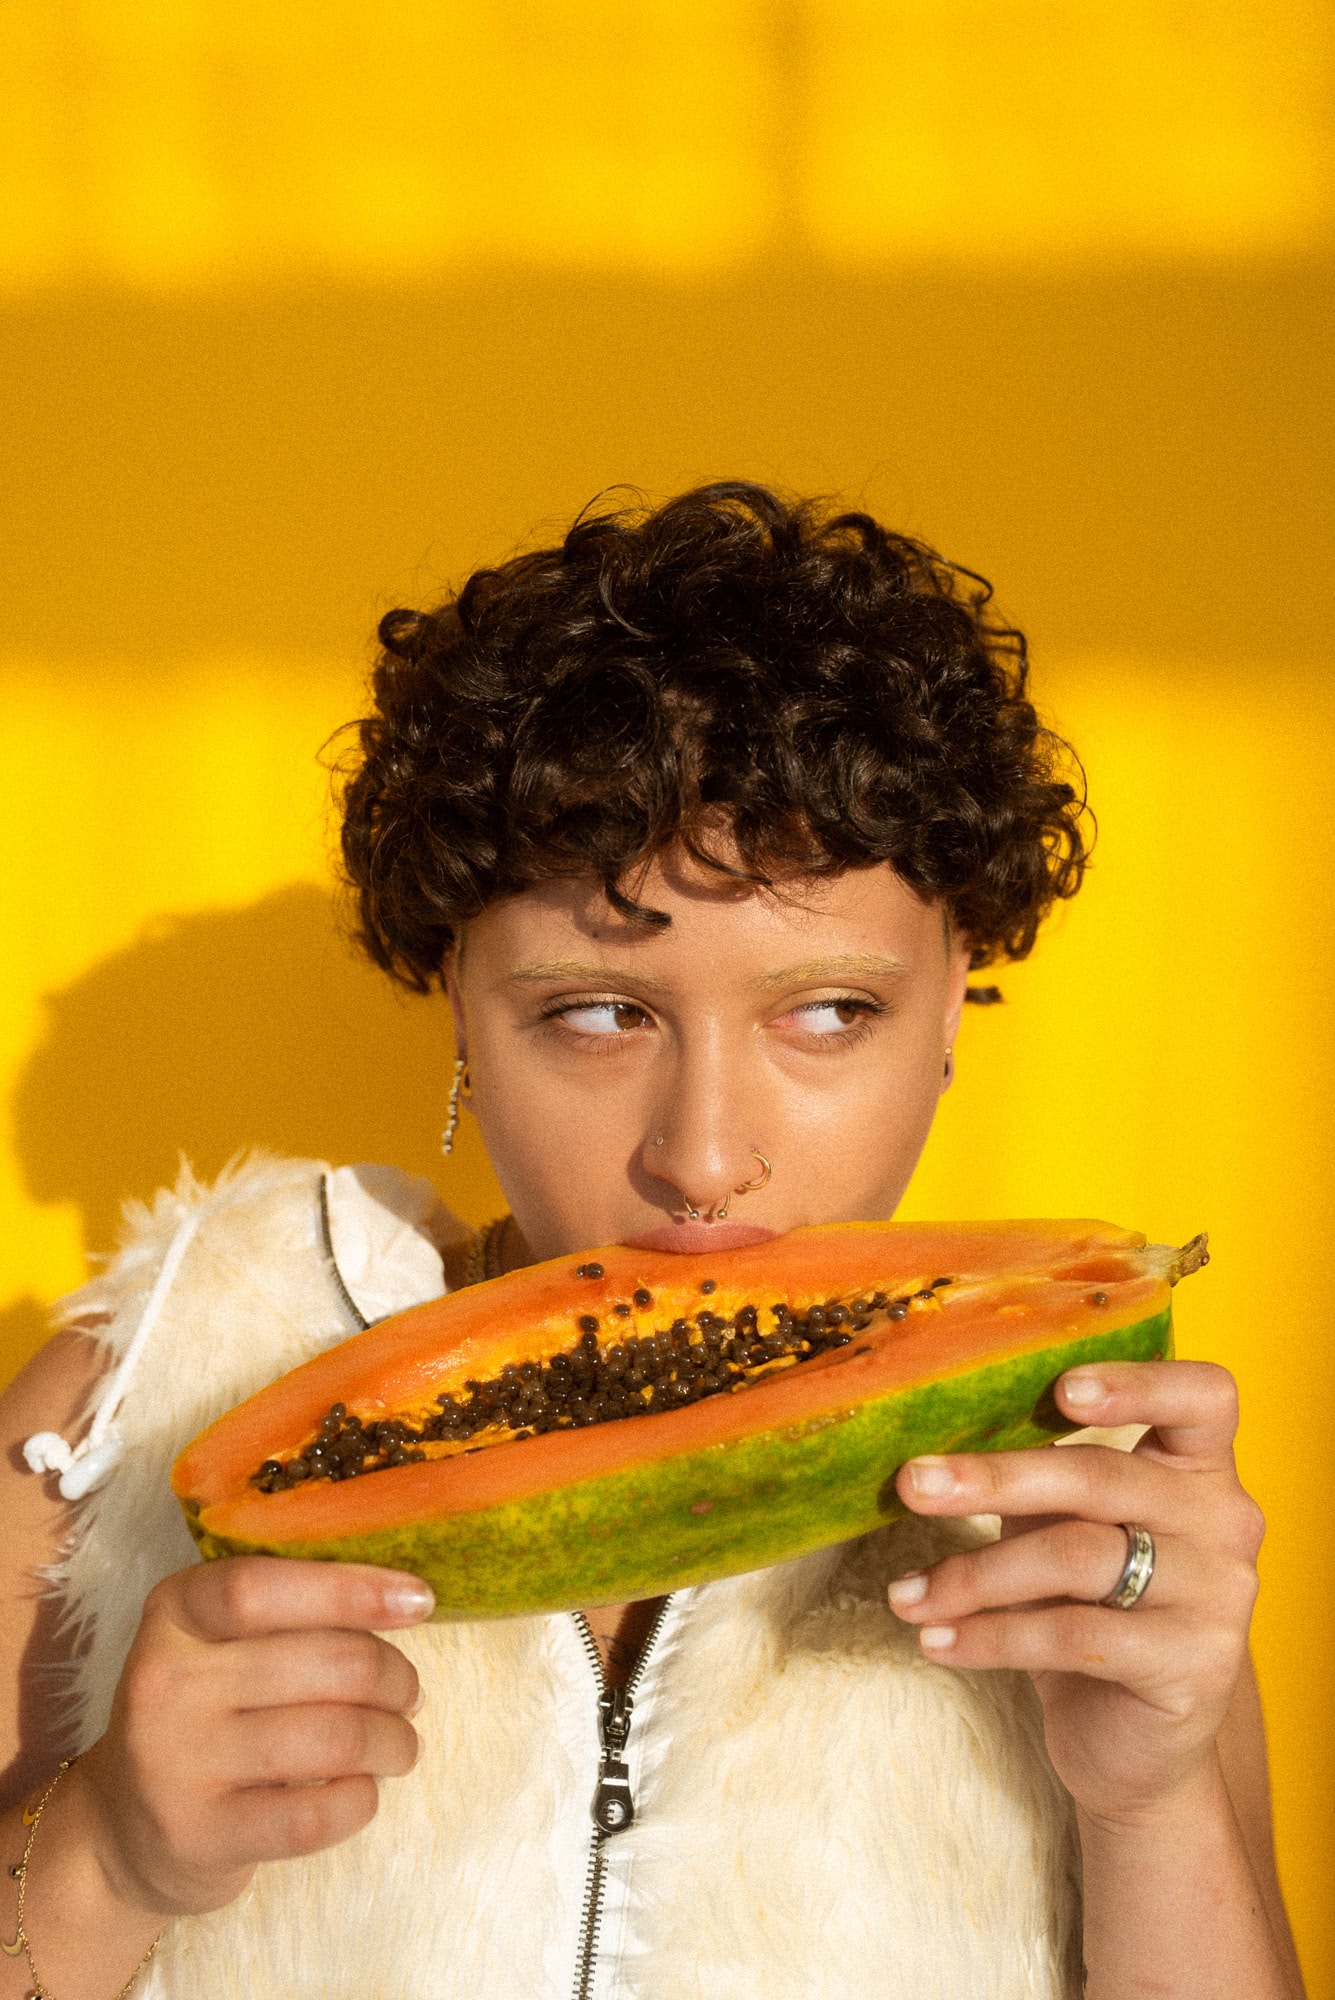 Młoda dziewczyna namiętnie gryzie owoc papaji.